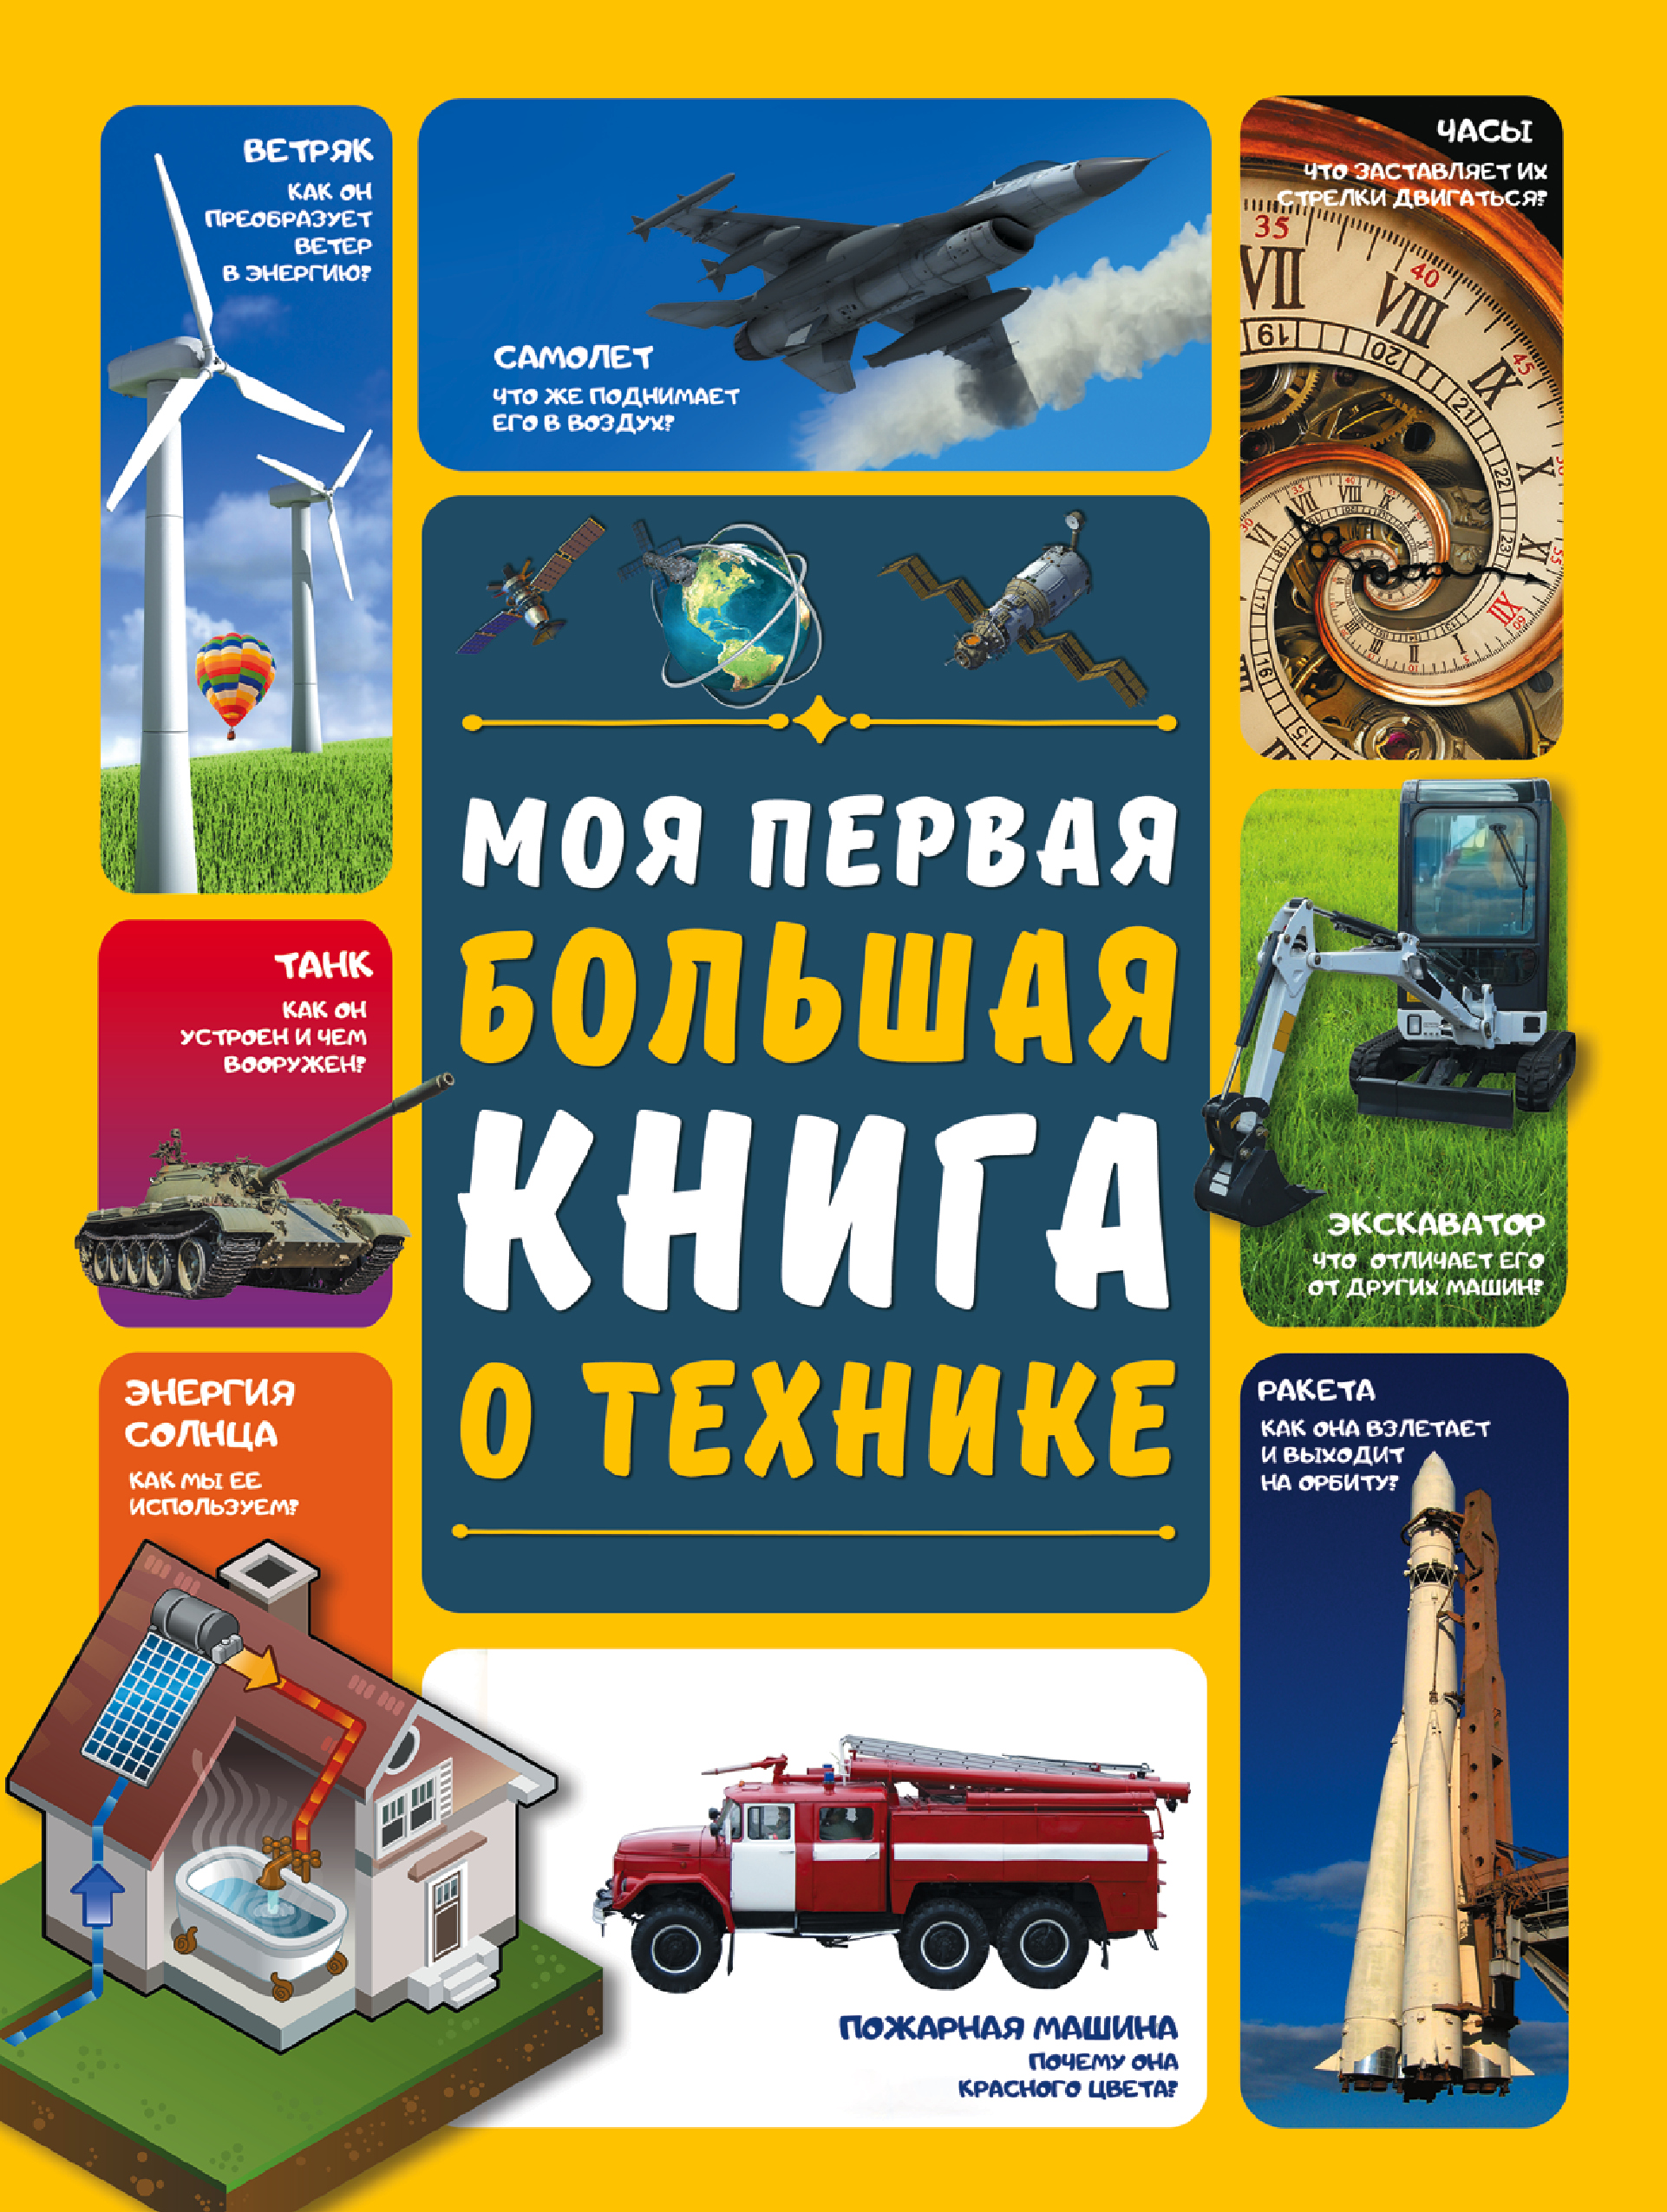 Мерников Андрей Геннадьевич - Моя первая большая книга о технике